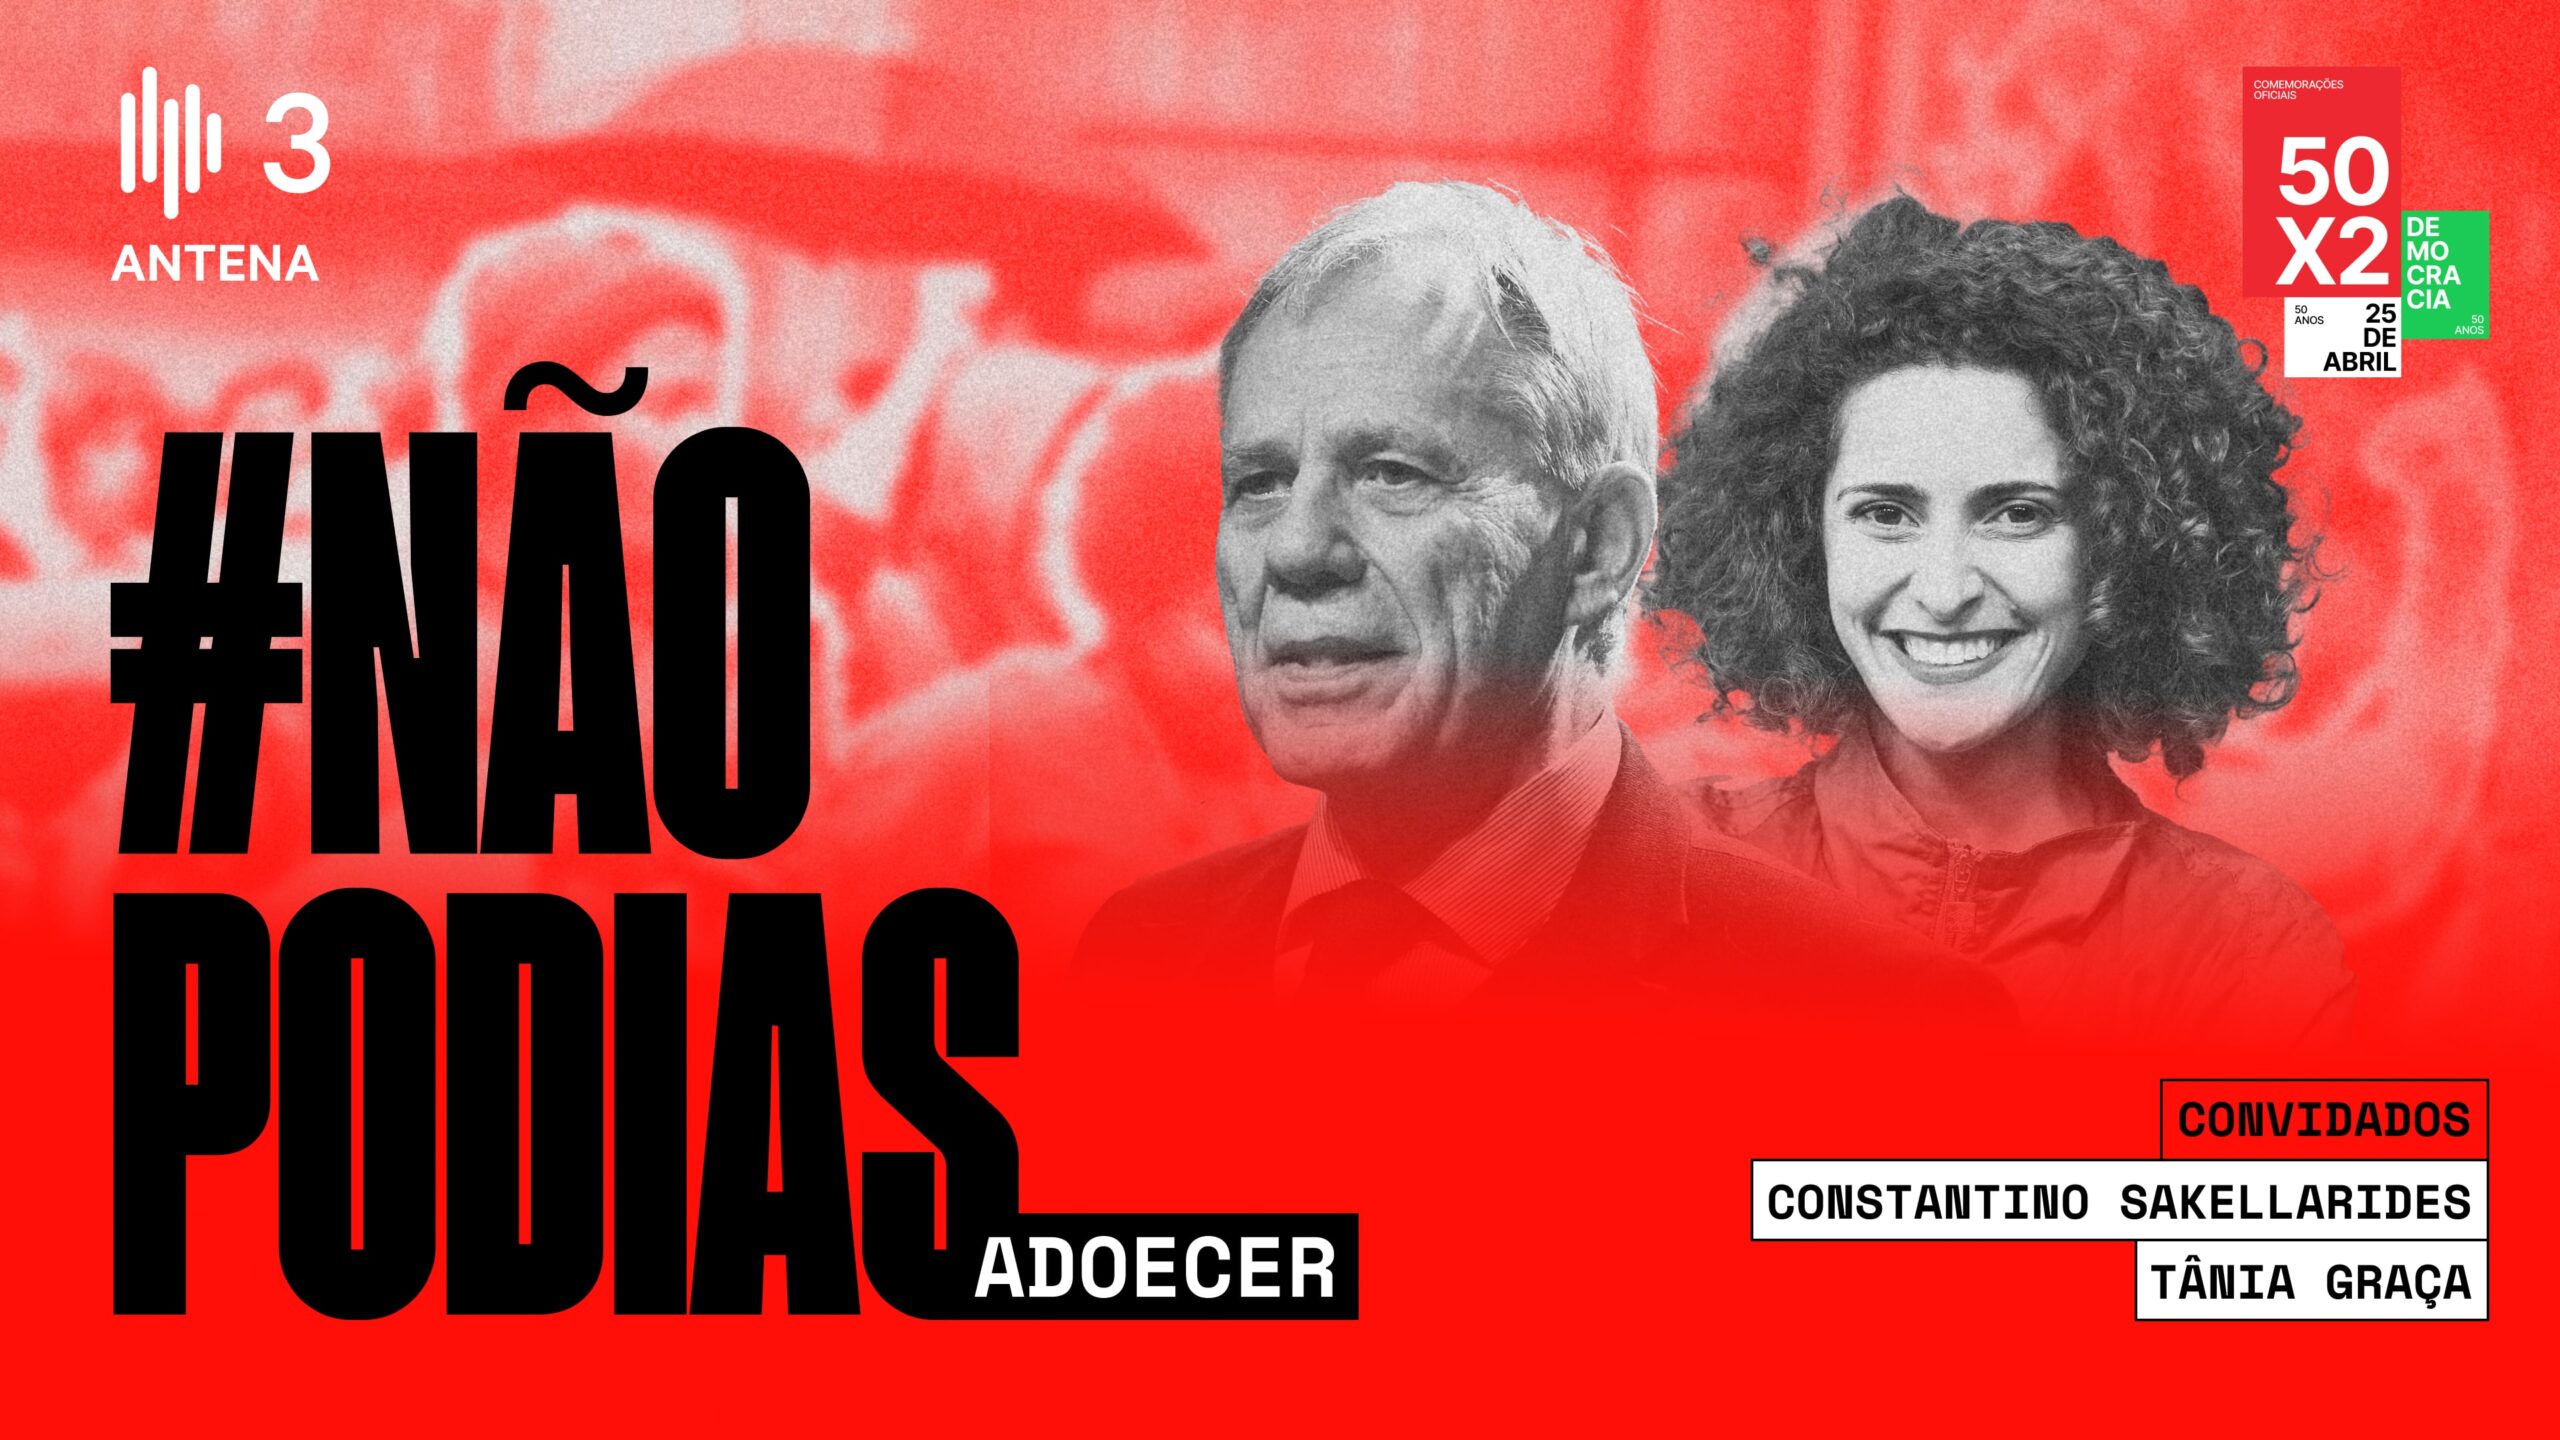 Antena 3 • #NãoPodias Adoecer - Comissão Comemorativa 50 Anos 25 Abril